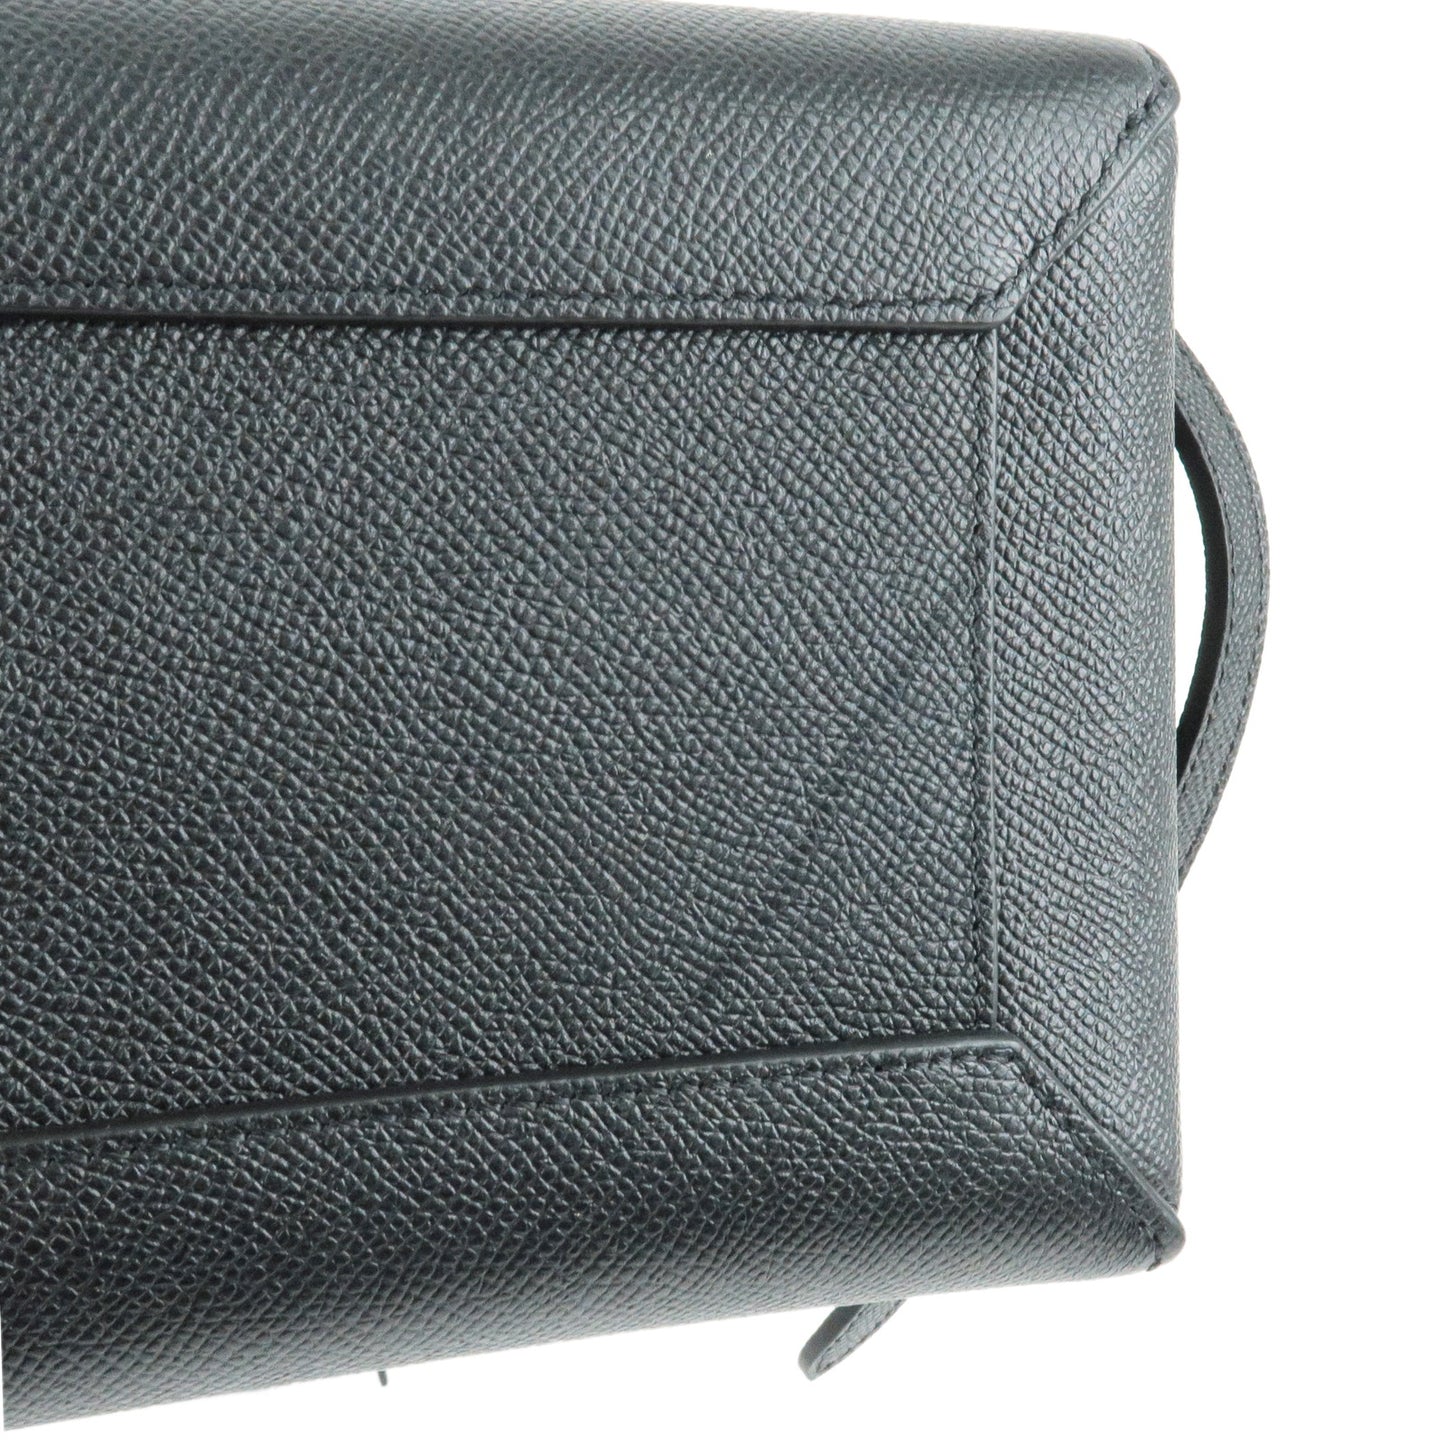 CELINE Leather Micro Belt Bag 2Way Shoulder Bag Black 189153